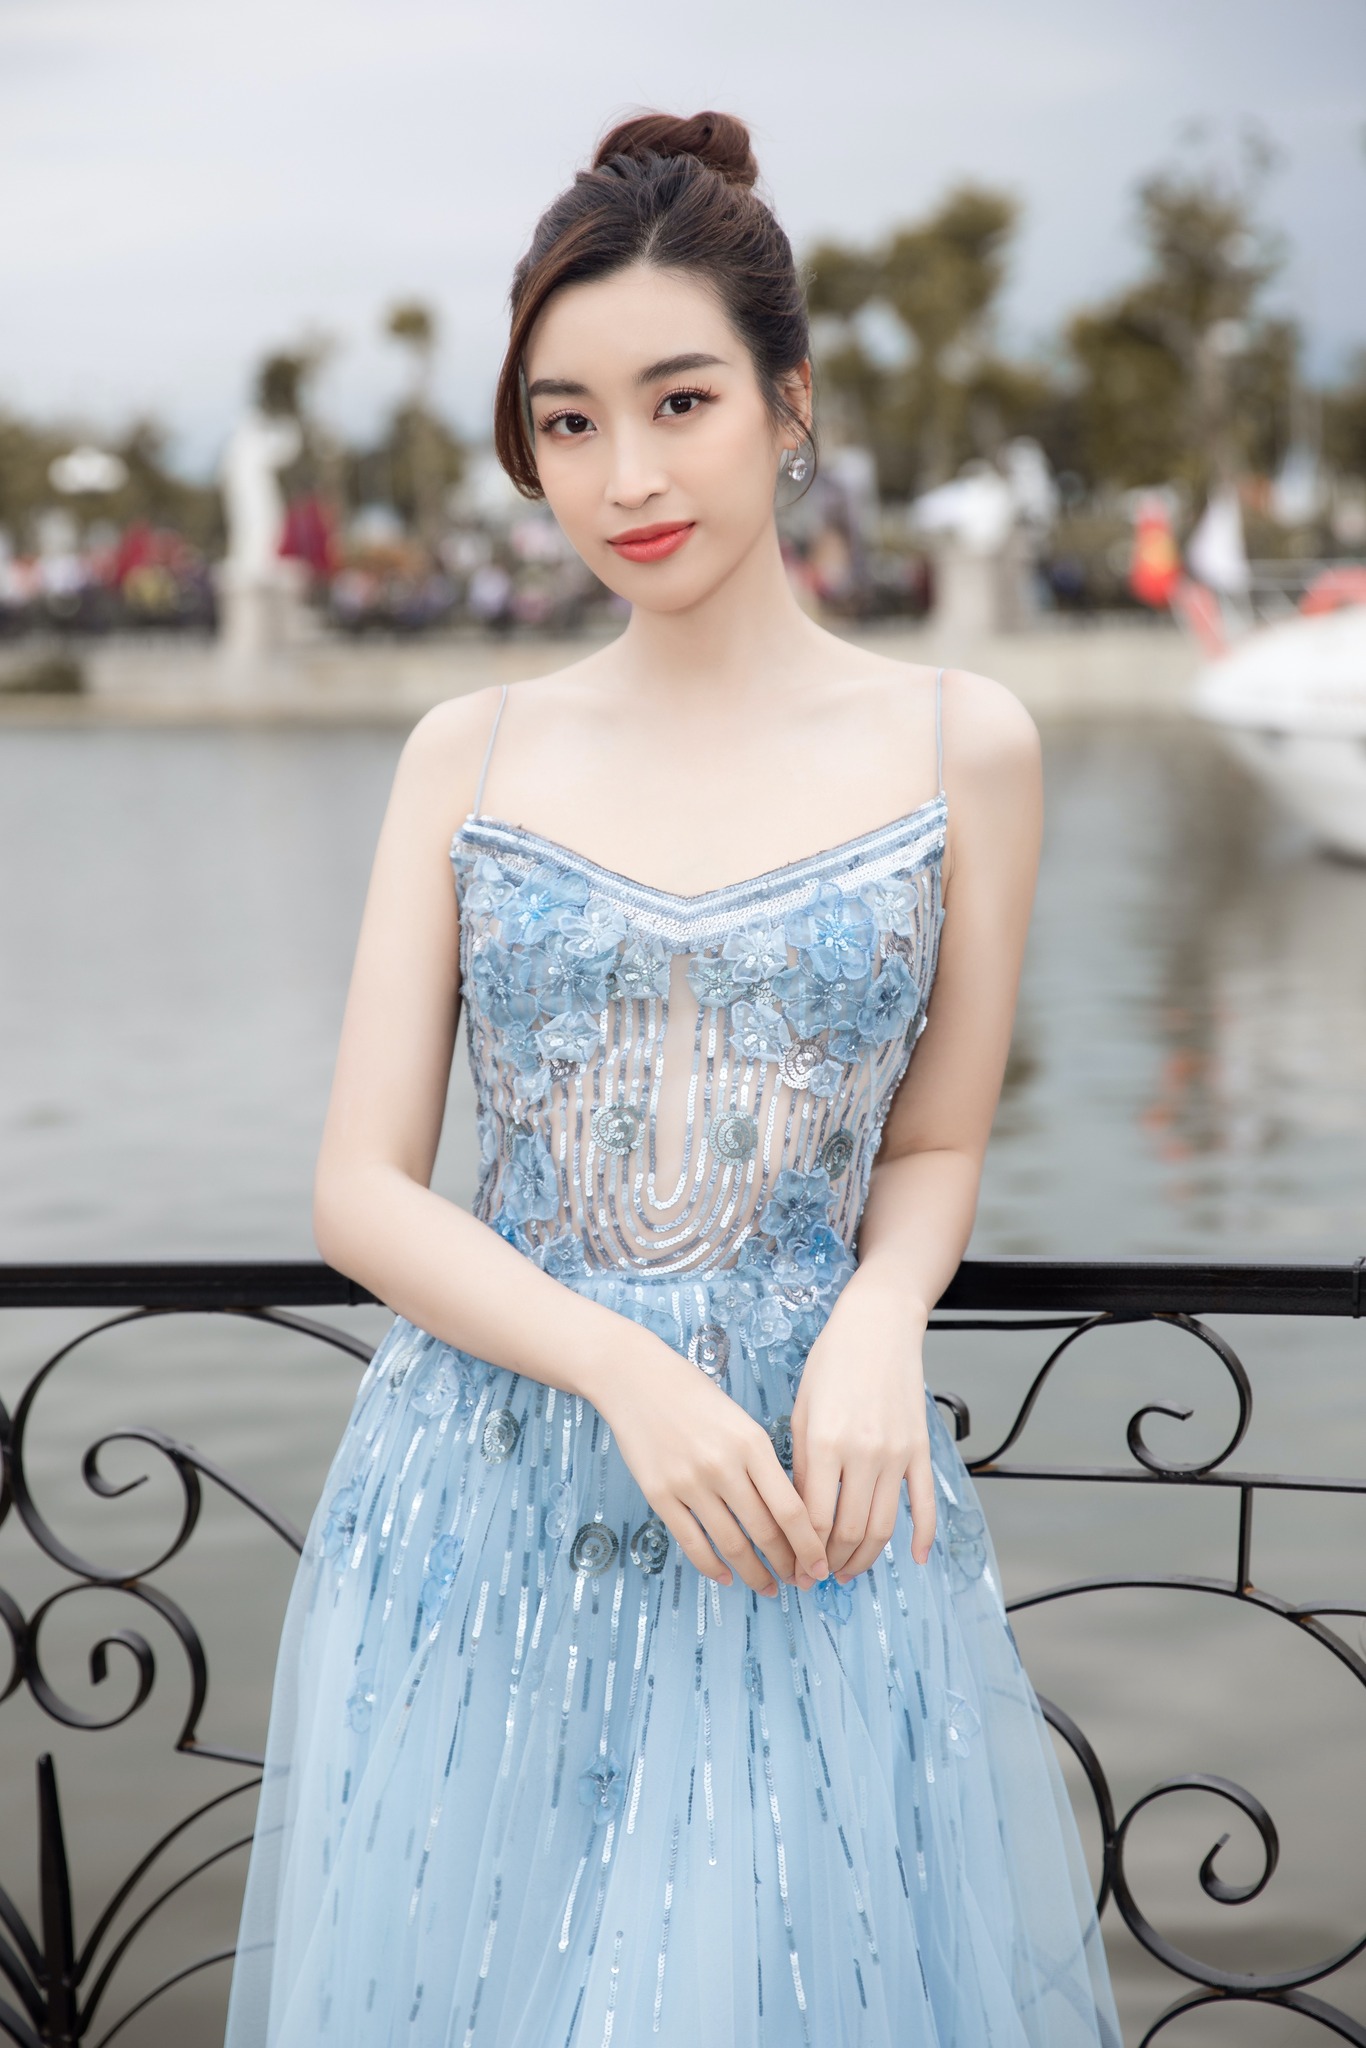 Đám cưới Hoa hậu Đỗ Mỹ Linh với Chủ tịch CLB Hà Nội được tổ chức ở đâu, khi nào? - Ảnh 2.